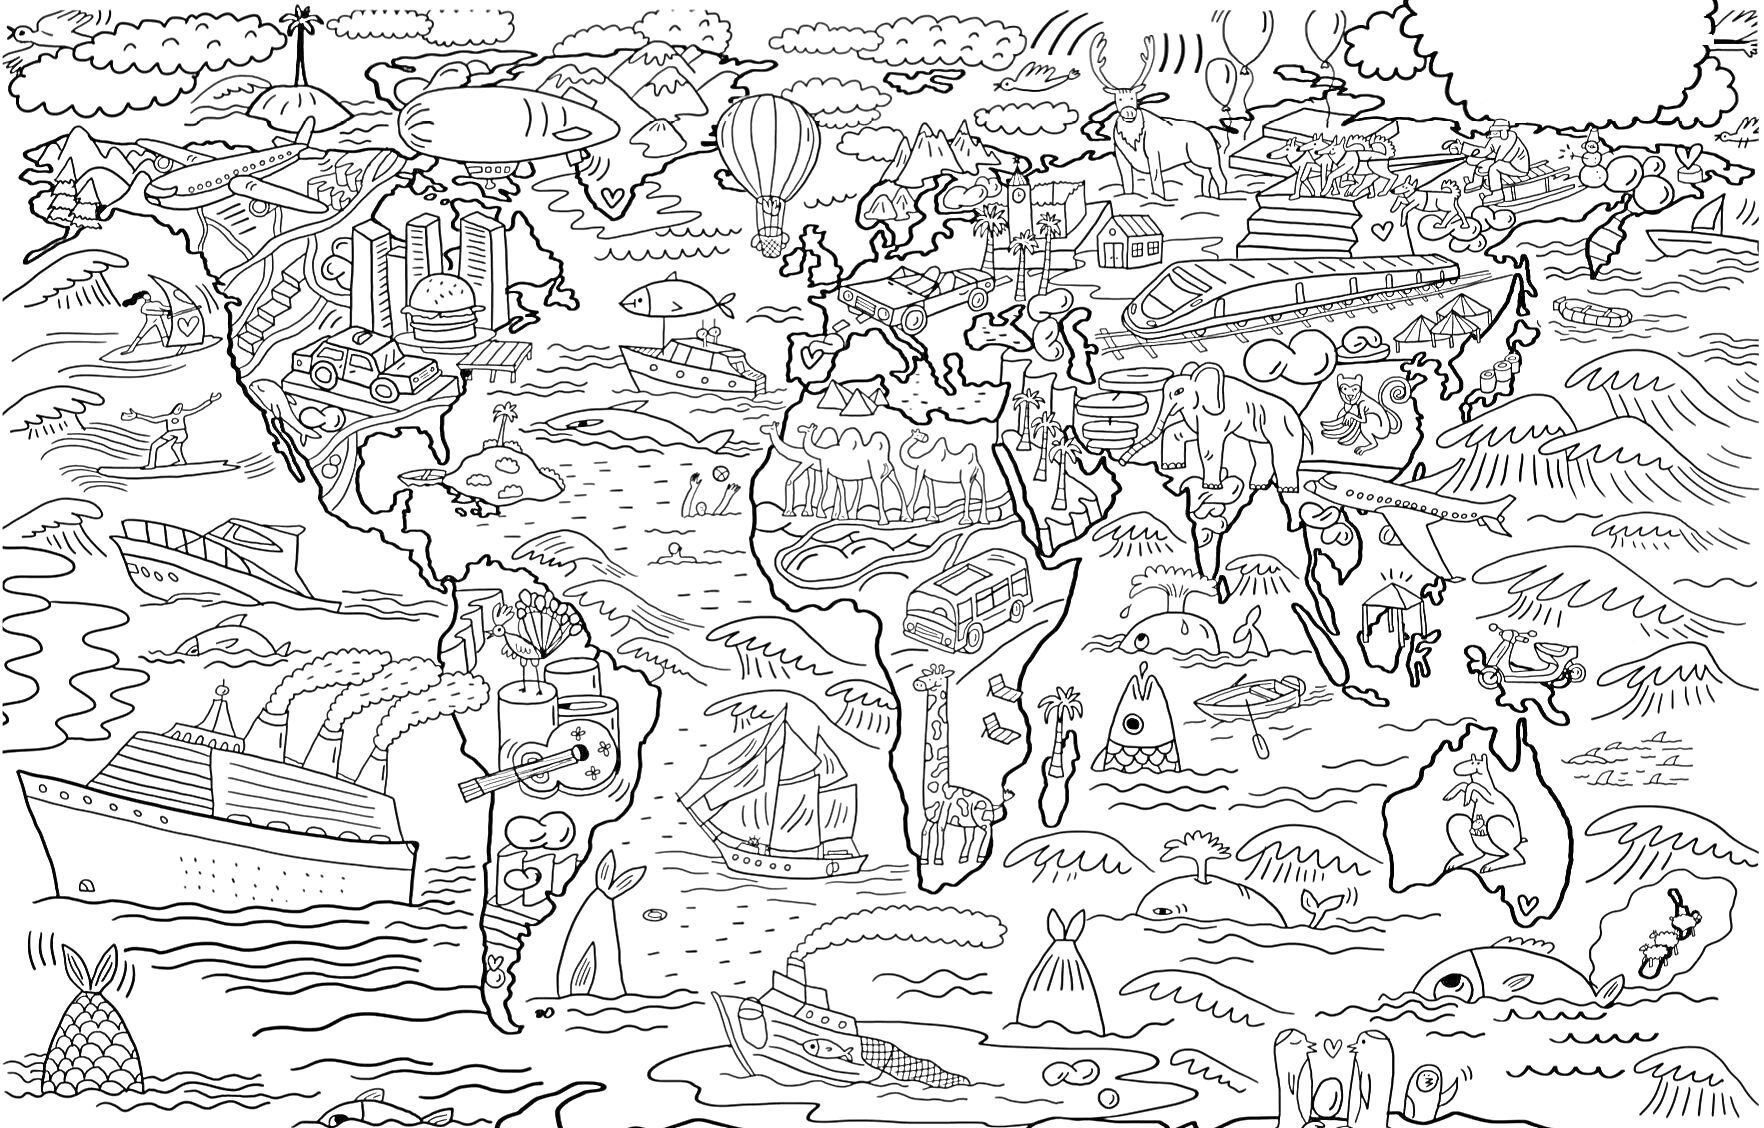 Раскраска карта мира с элементами люди, здания, корабли, самолеты, деревья, хот-эйр баллон, автомобили, животные, корабли, лодки, айсберг, вулкан, сфинкс, статуи, лифт